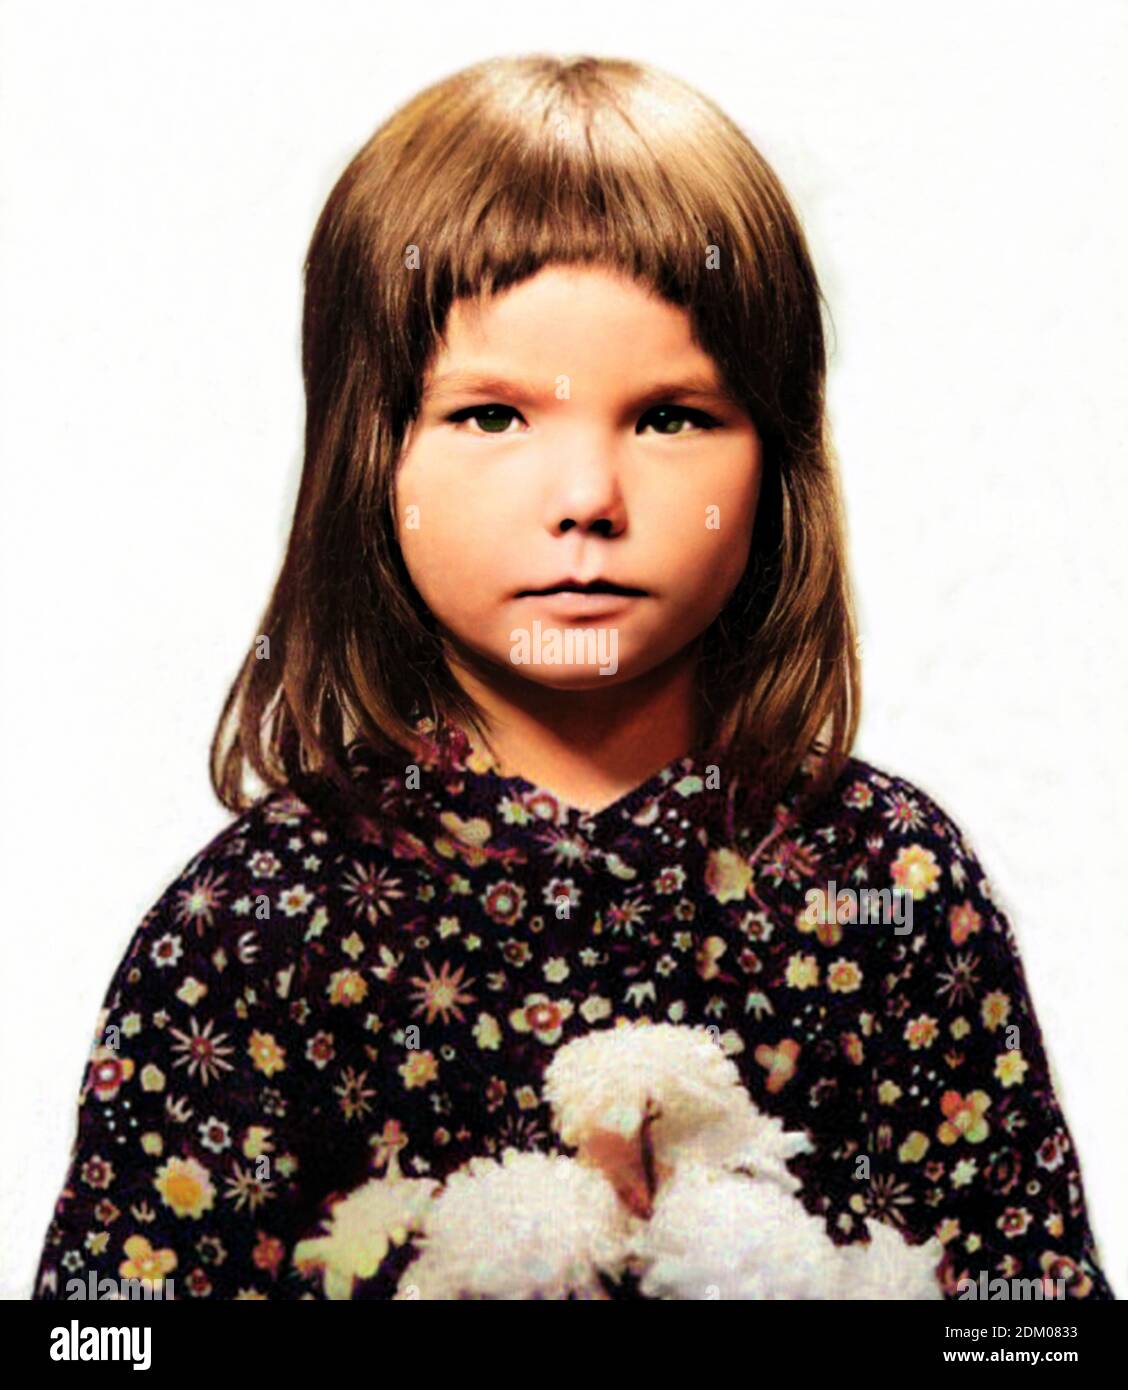 1970 CA, ISLANDE : le célèbre chanteur et compositeur islandais Pop BJORK  Björk Guðmundsdóttir ( né en 1965 ) quand était une jeune fille de 5 ans .  Photographe inconnu. COLORISÉ NUMÉRIQUEMENT . -